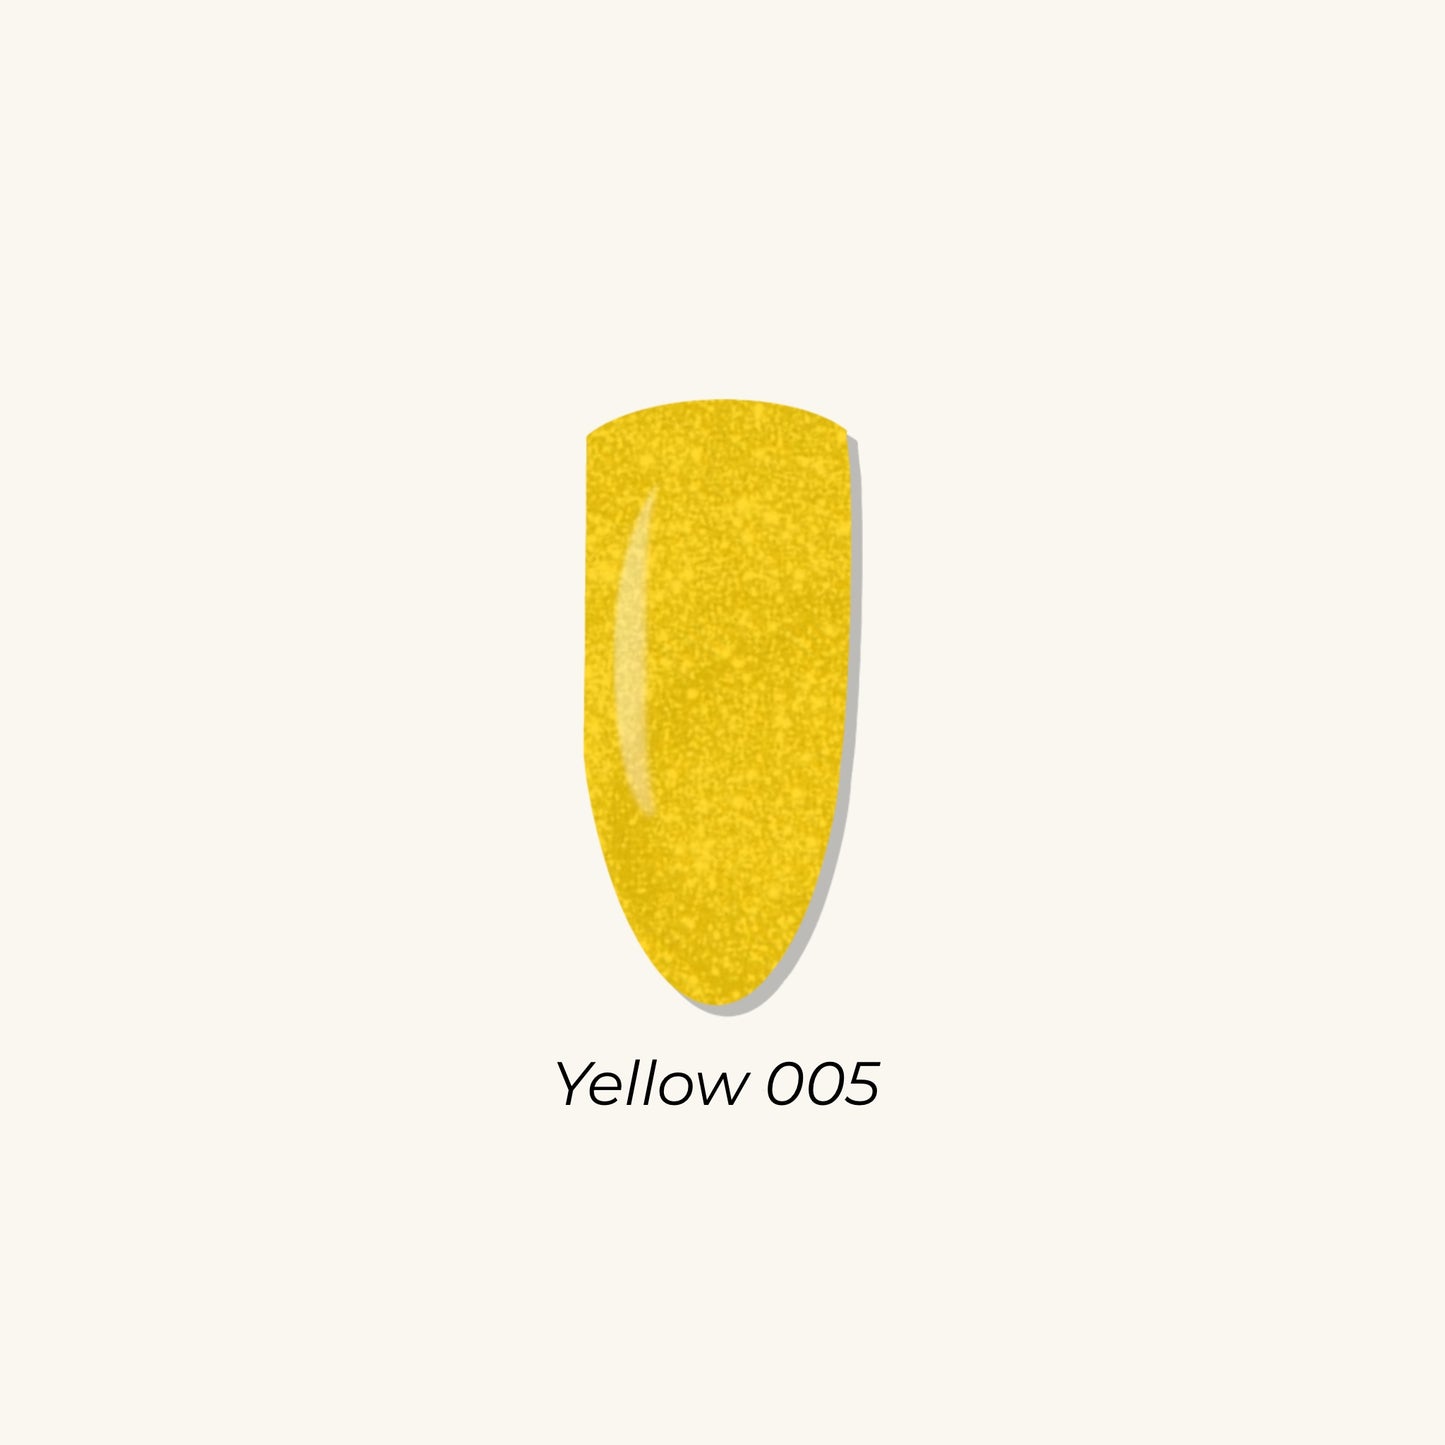 Yellow 005